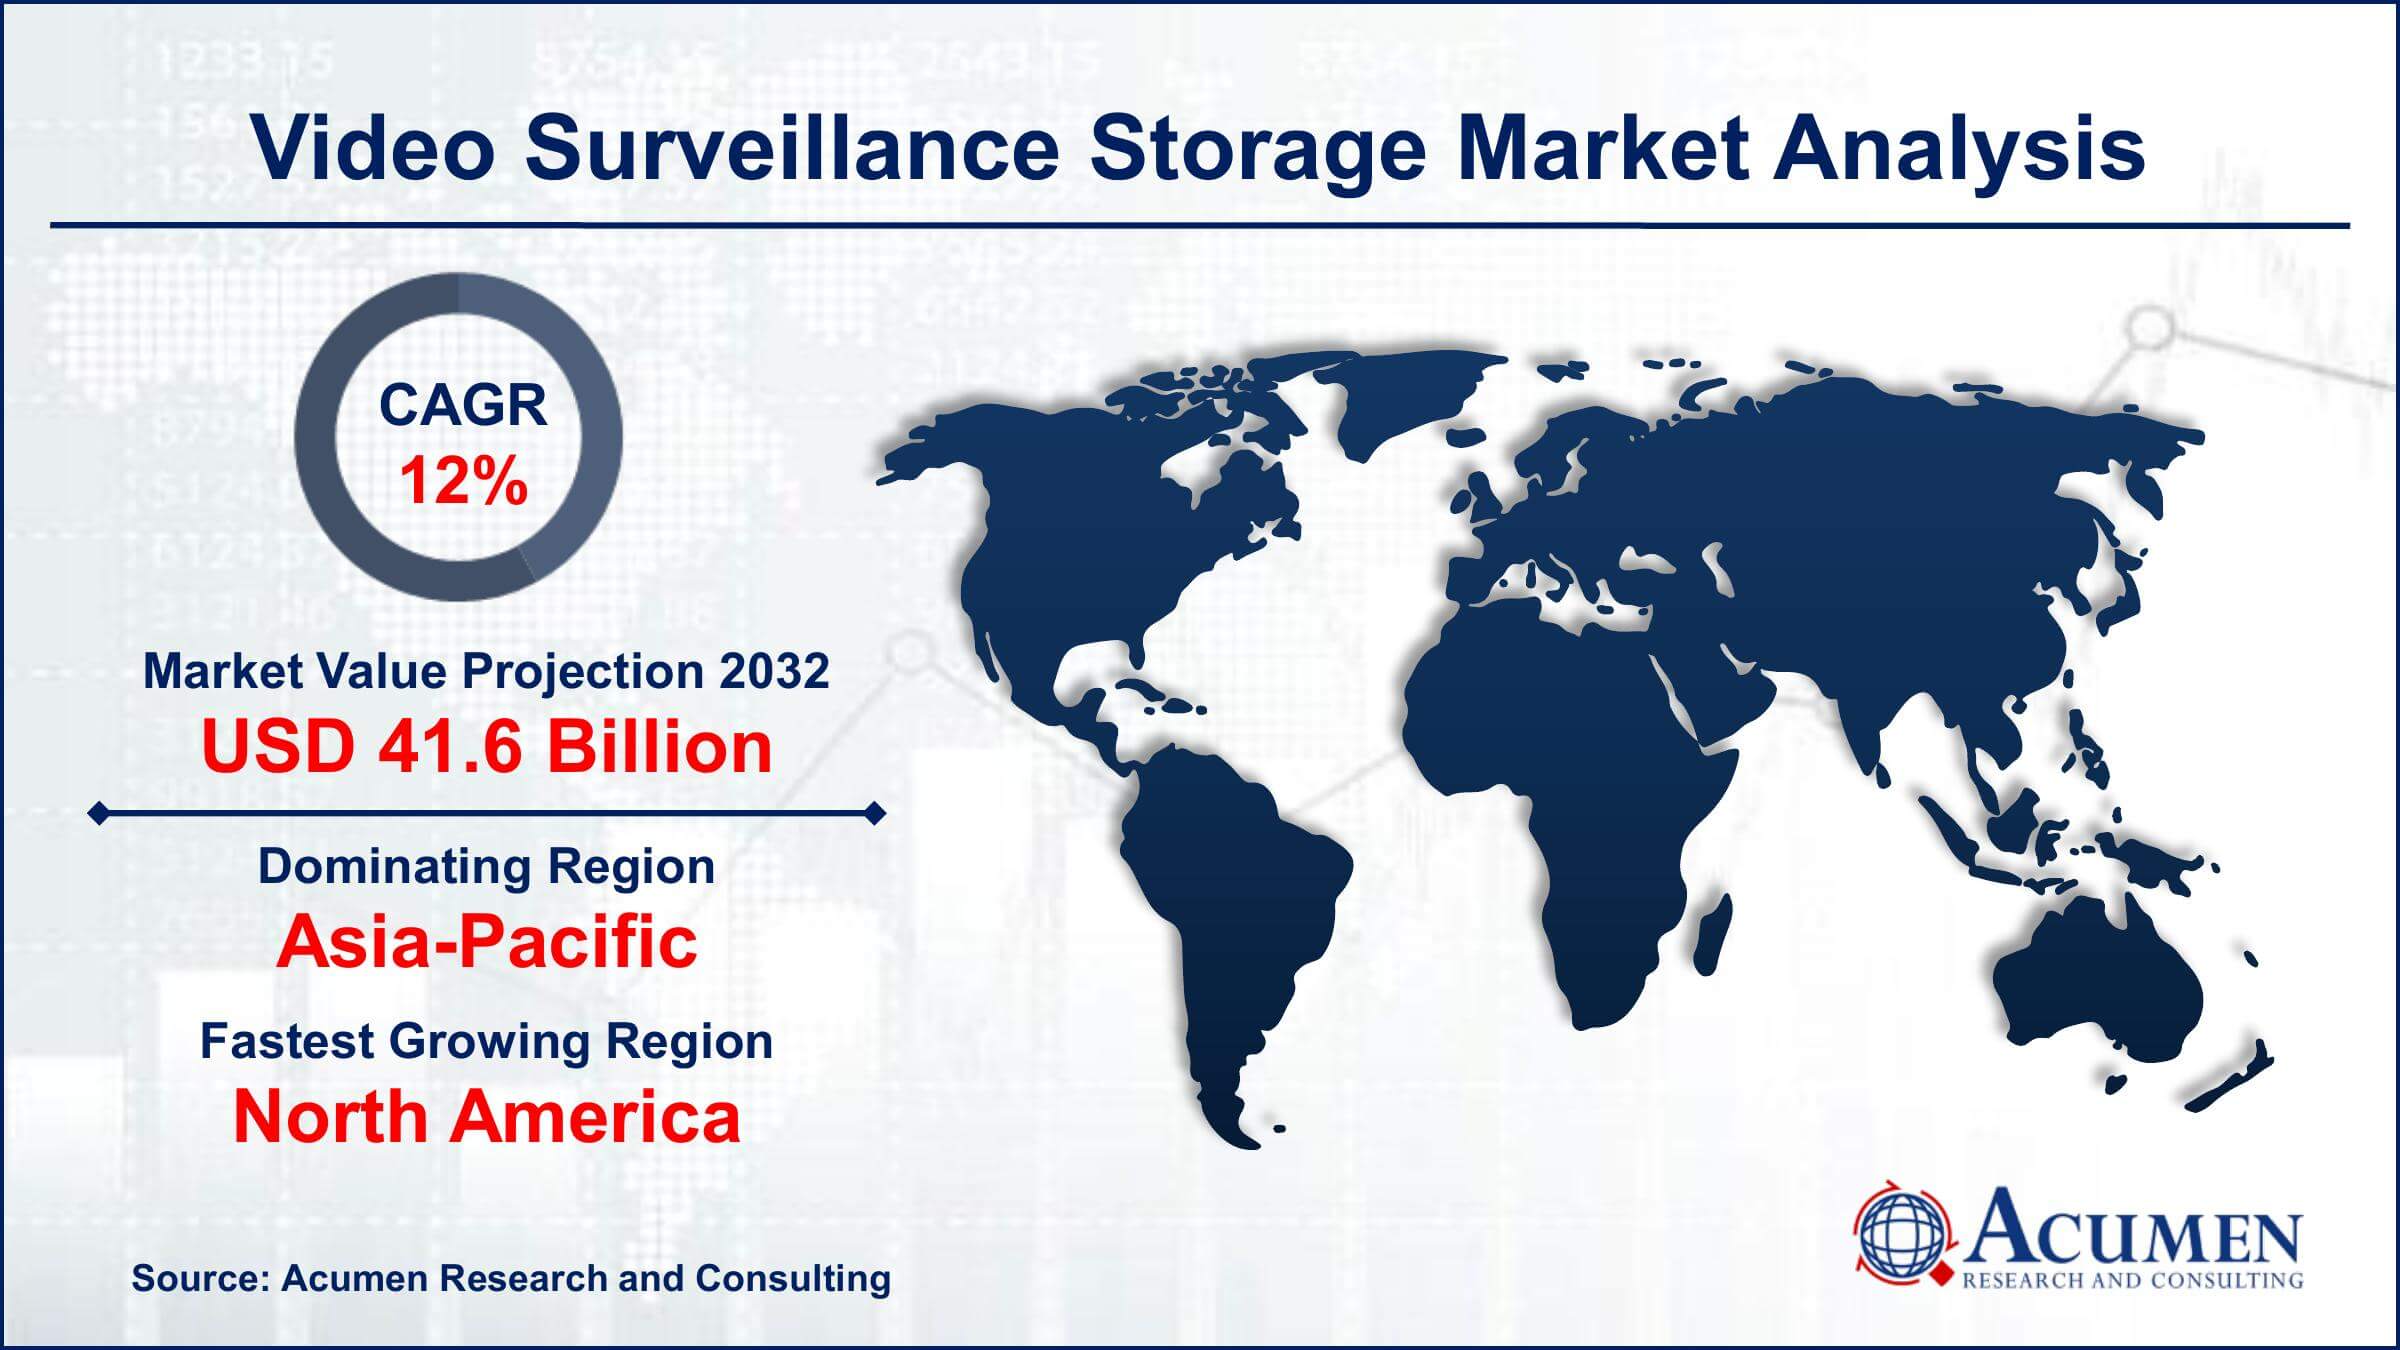 Global Video Surveillance Storage Market Trends